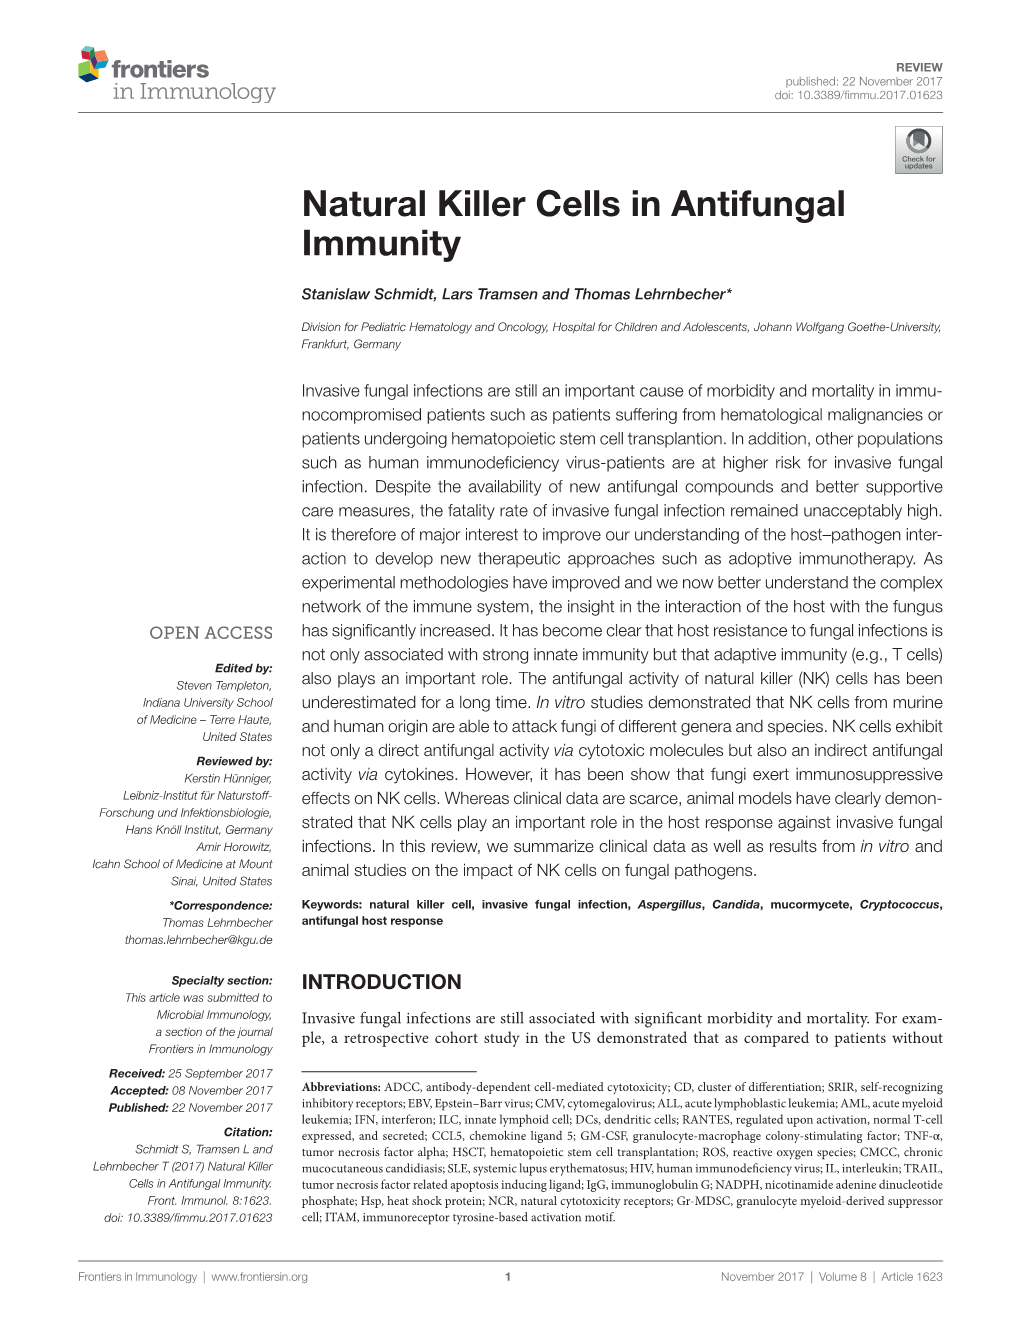 Natural Killer Cells in Antifungal Immunity